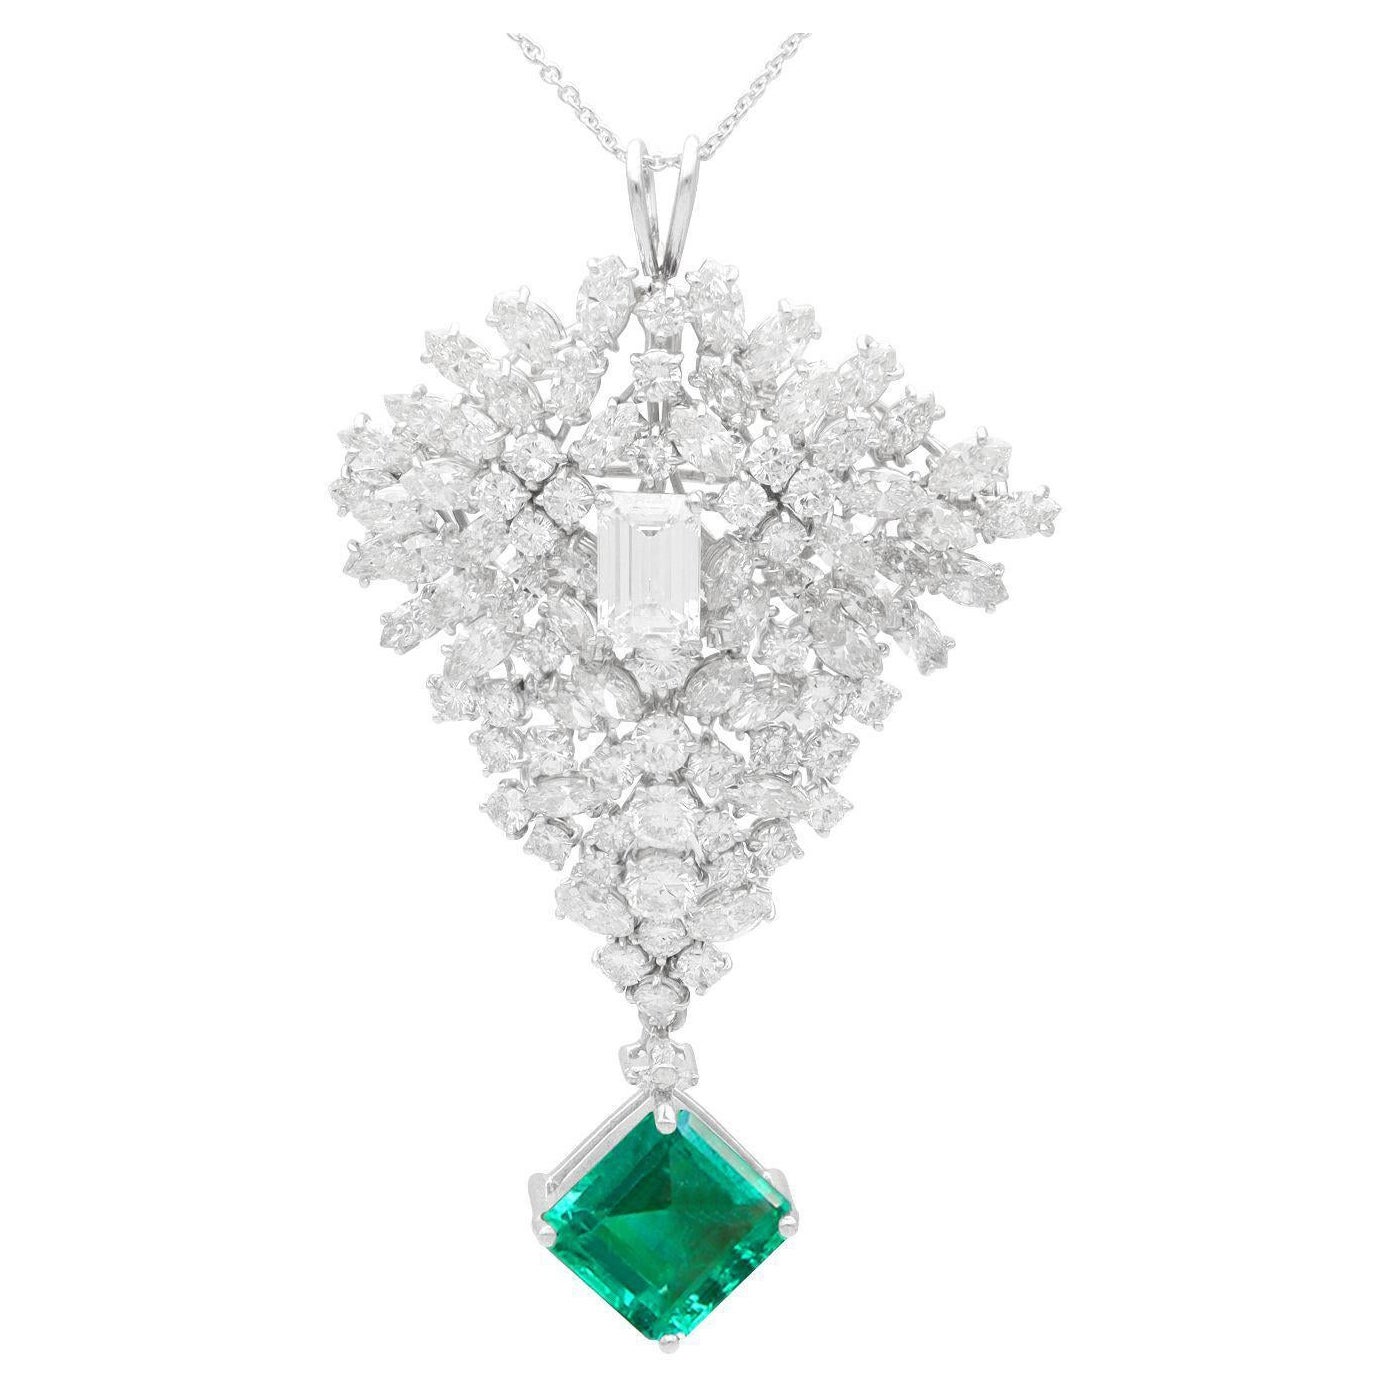 7.47 Carat Zambian Emerald and 14.50 Carat Diamond White Gold Brooch / Pendant